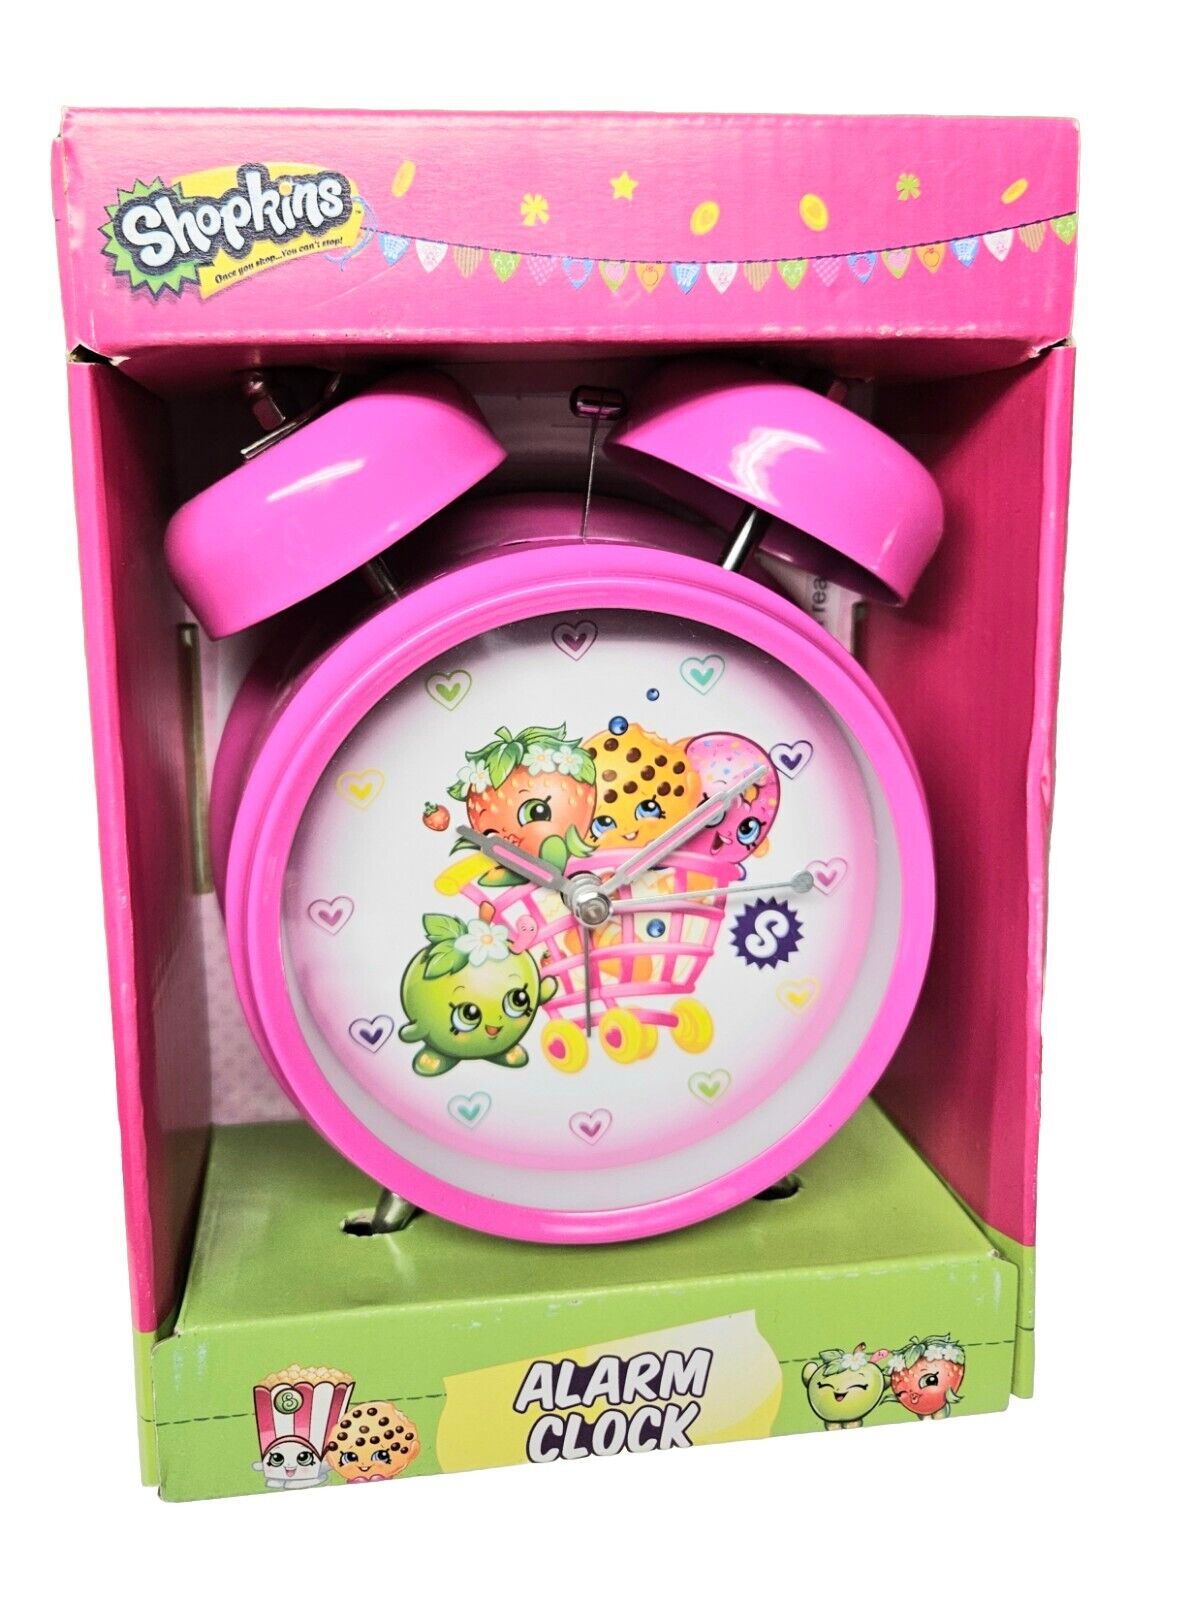 Shopkins Alarm Clock for Children/Kids Desk Clock Bell Ringer Analog Display MIB